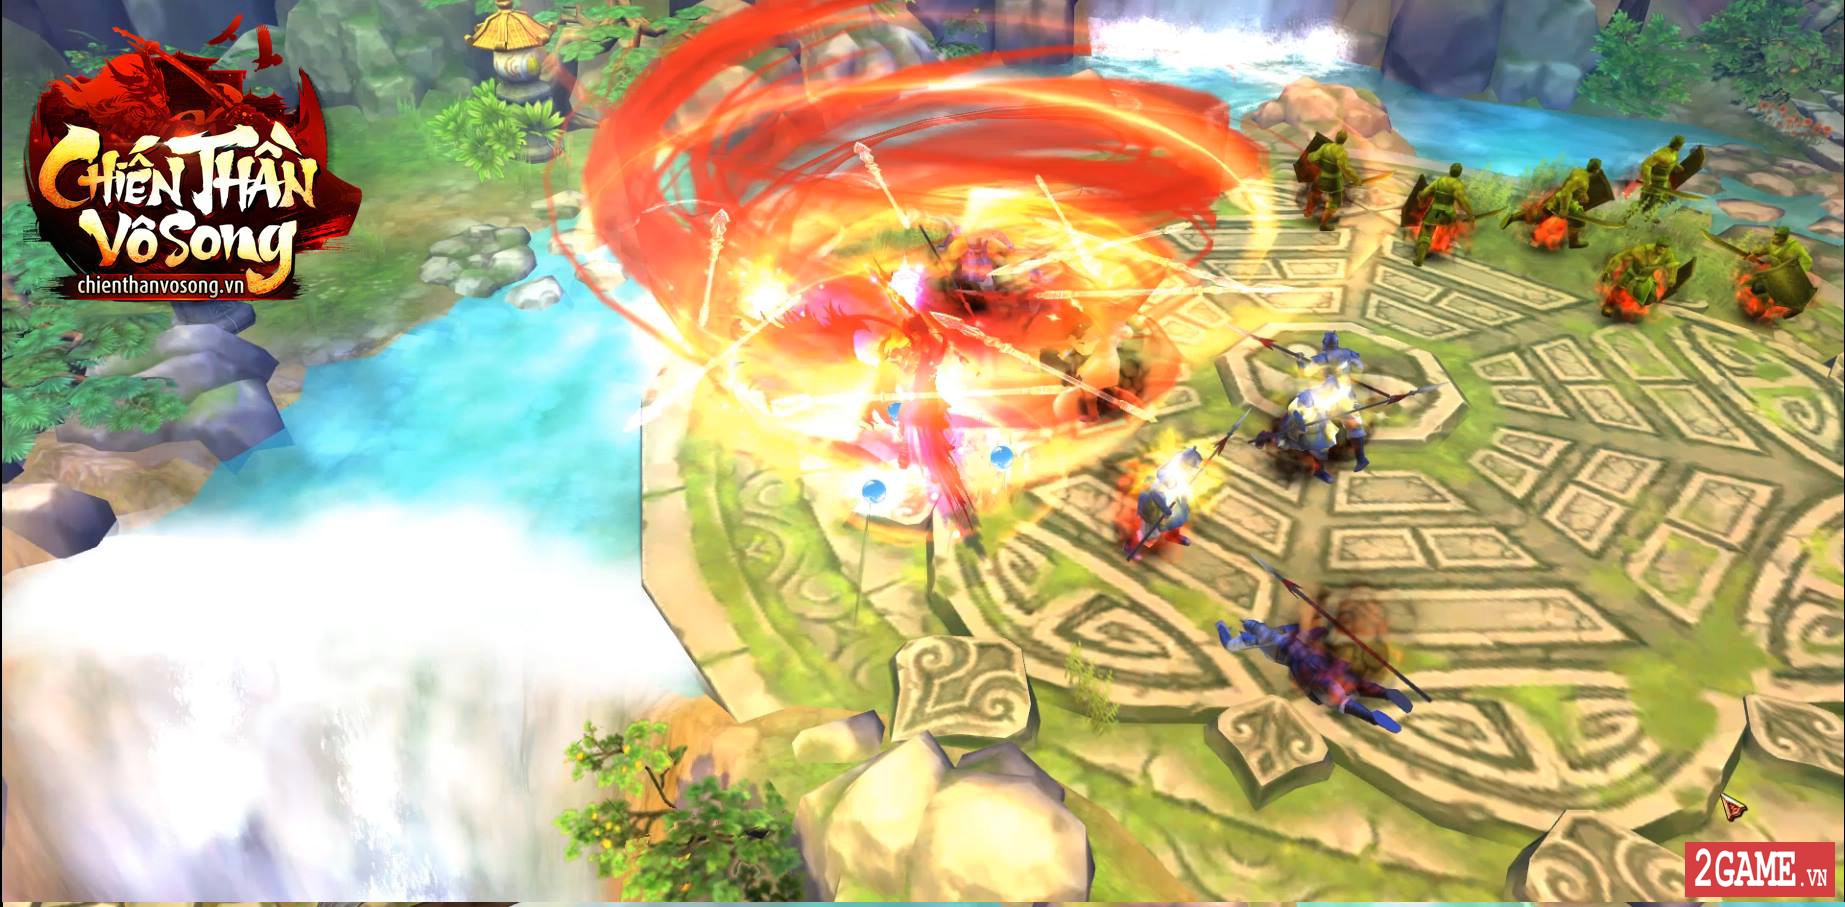 Chiến Thần Vô Song - Webgame nhập vai sắp được SohaGame ra mắt tại làng game Việt 2